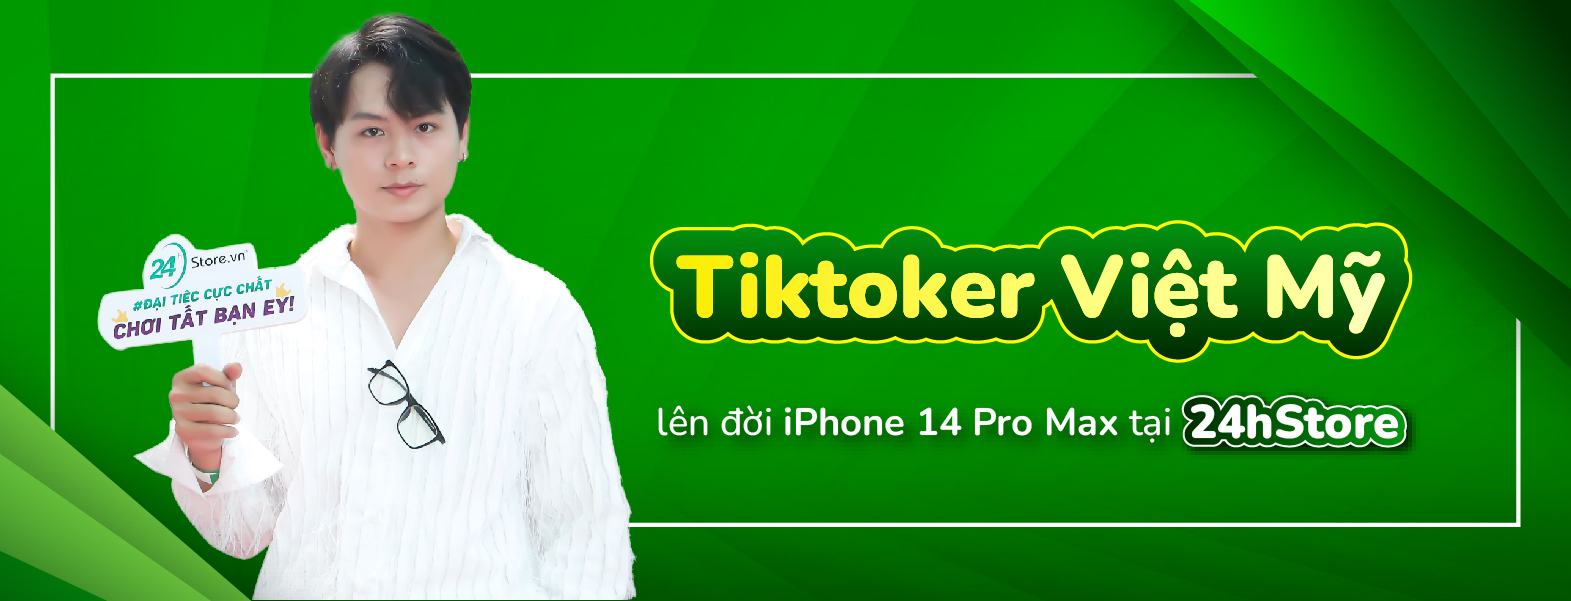 Tiktoker triệu view Việt Mỹ sắm iPhone 14 Pro Max